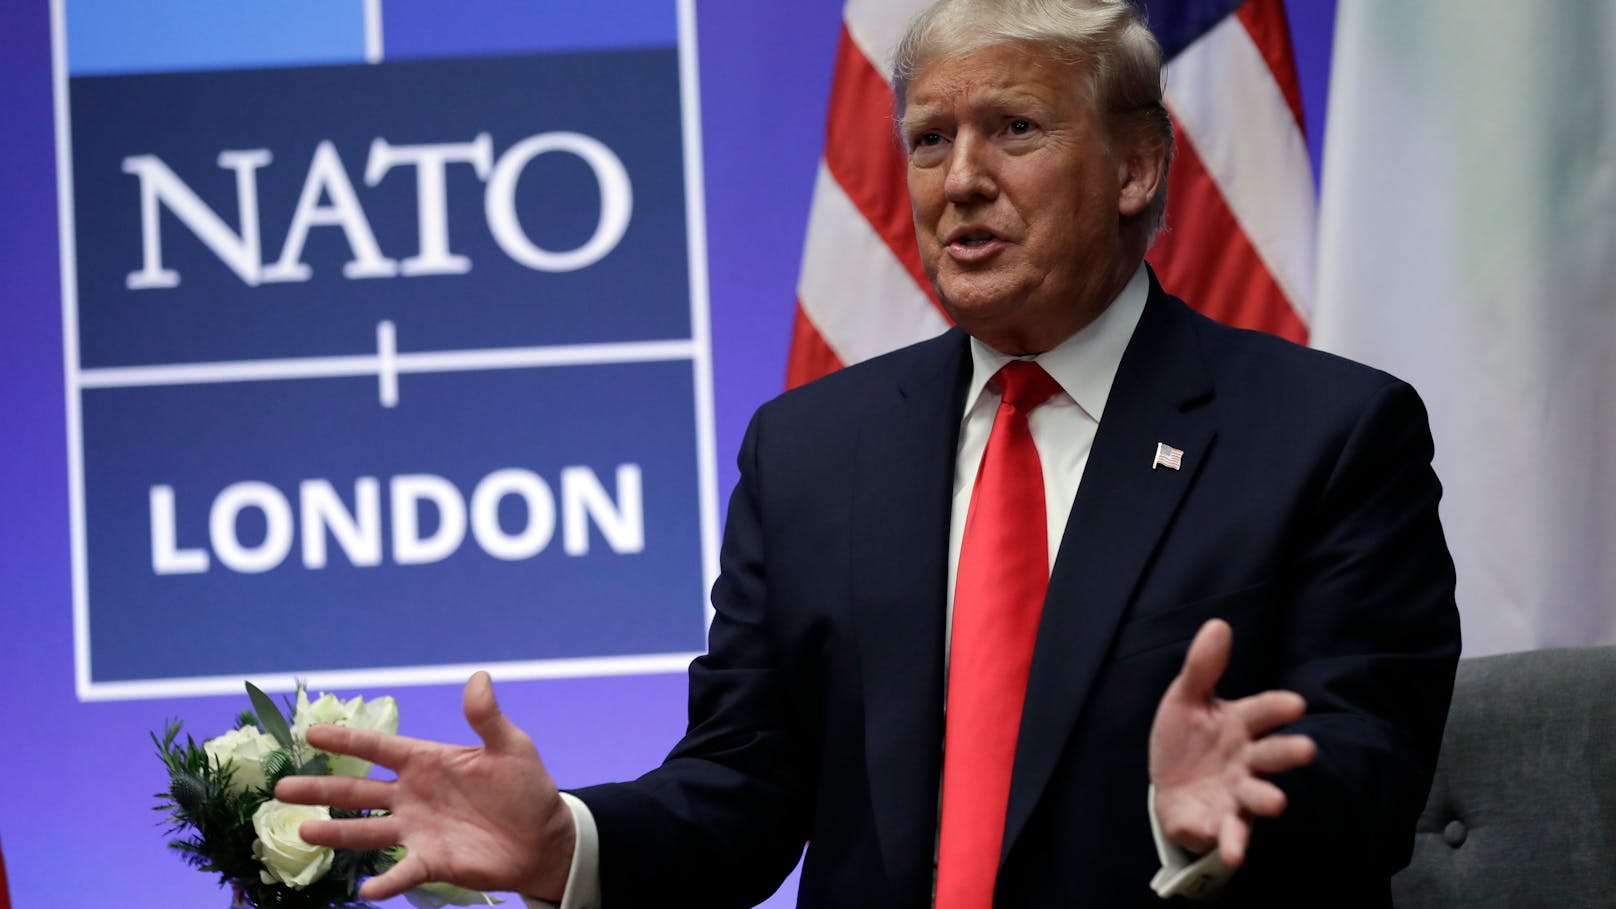 Trump weist Kritik zurück: "Habe NATO stark gemacht"